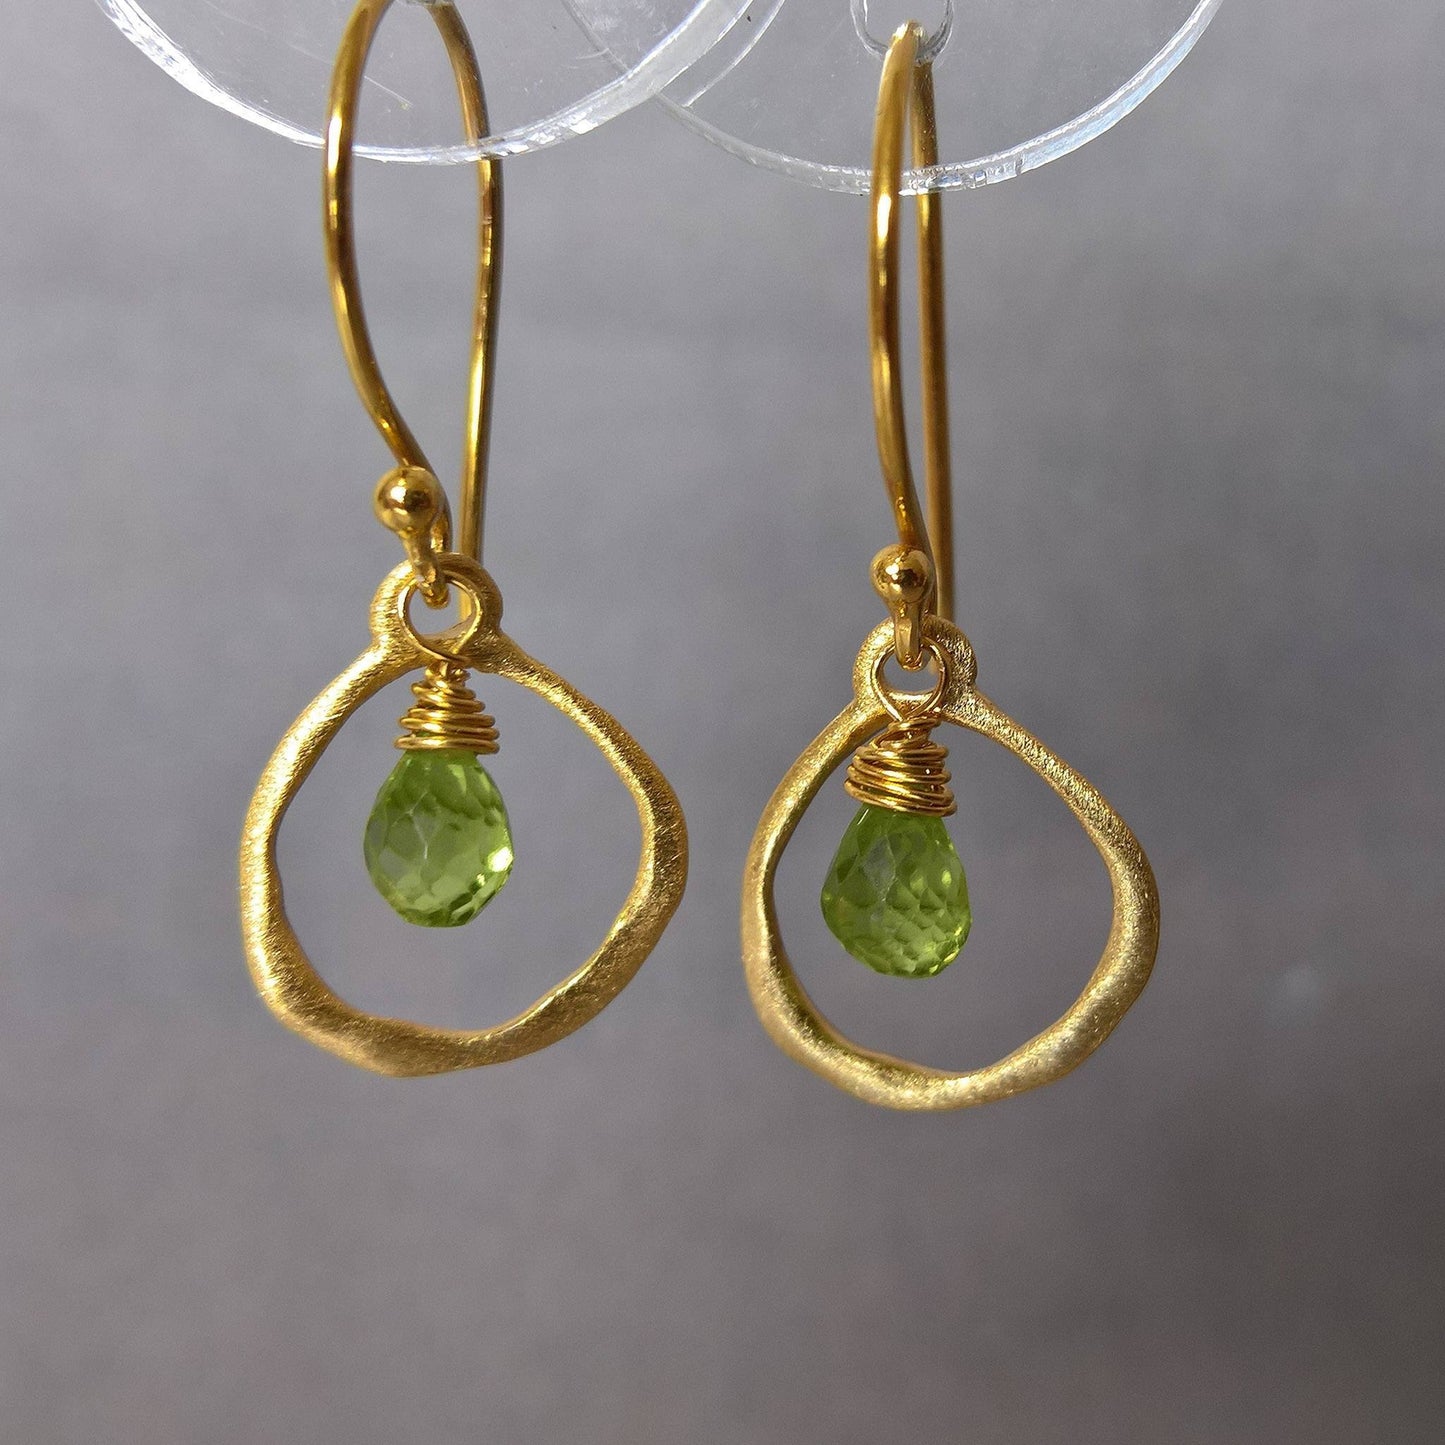 Peridot dangle earrings in gold vermeil